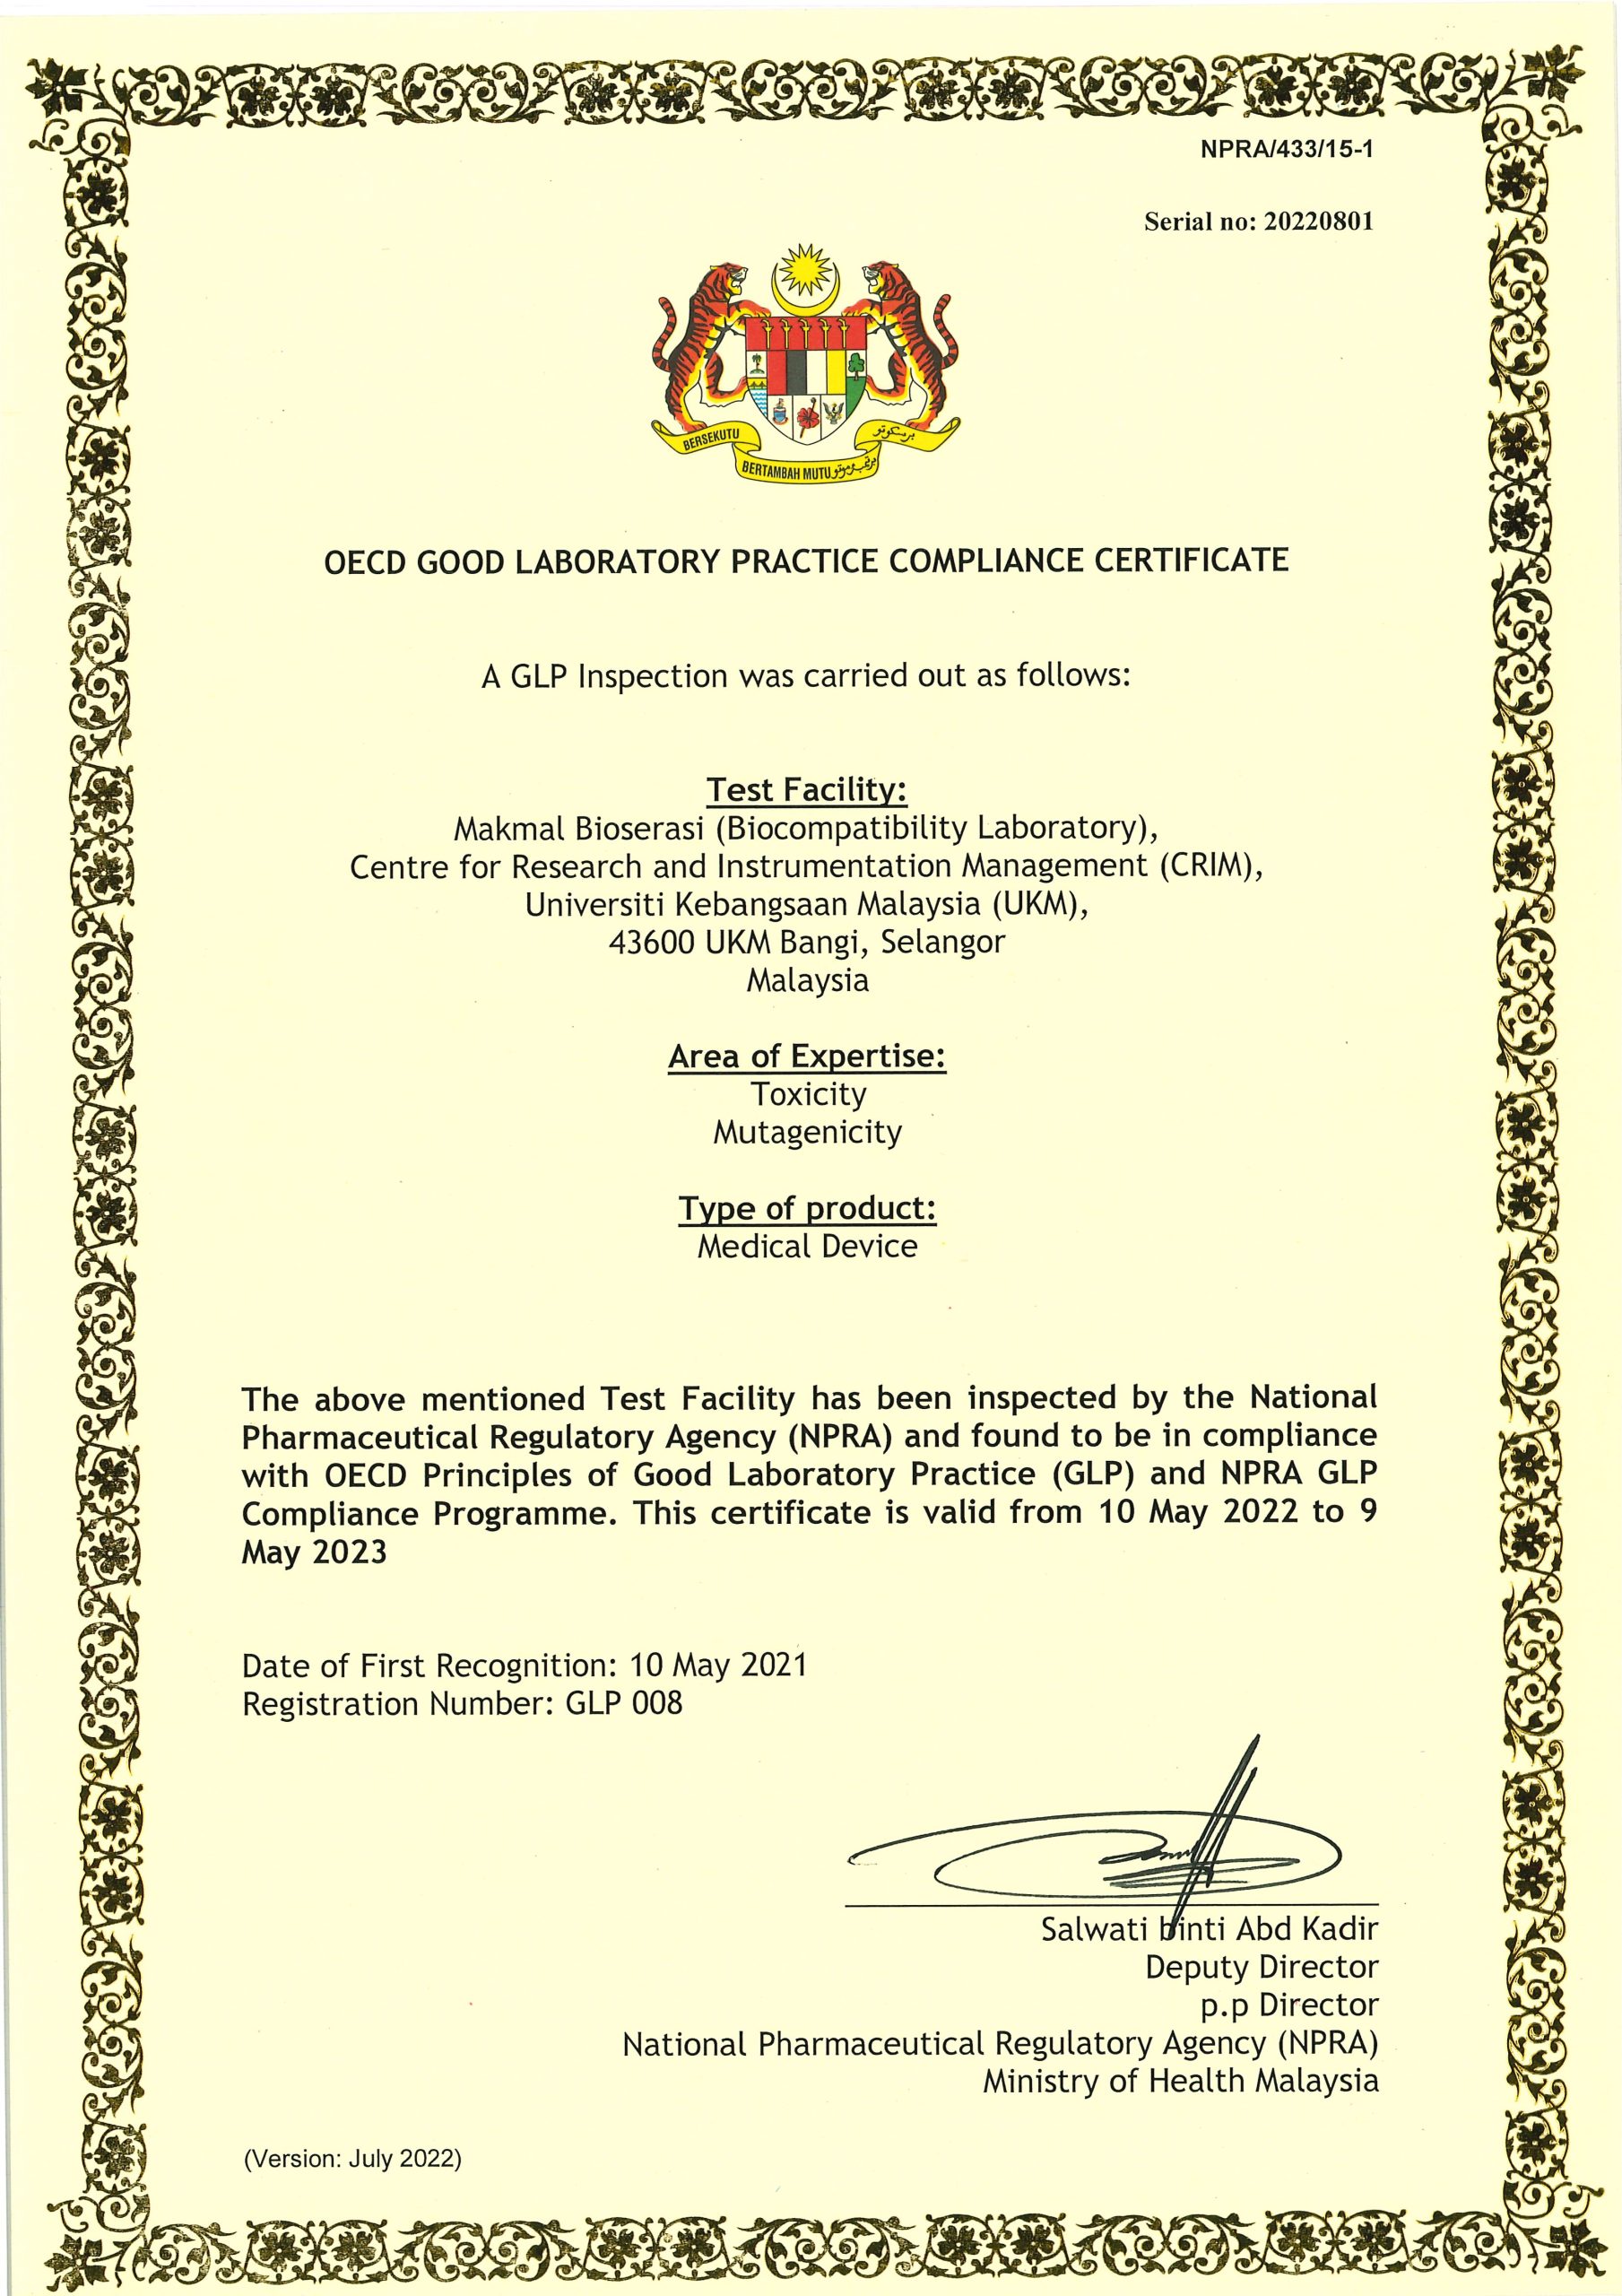 NPRA-433-15-1 GLP Certificate 12.08.2022 Makmal Bioserasi